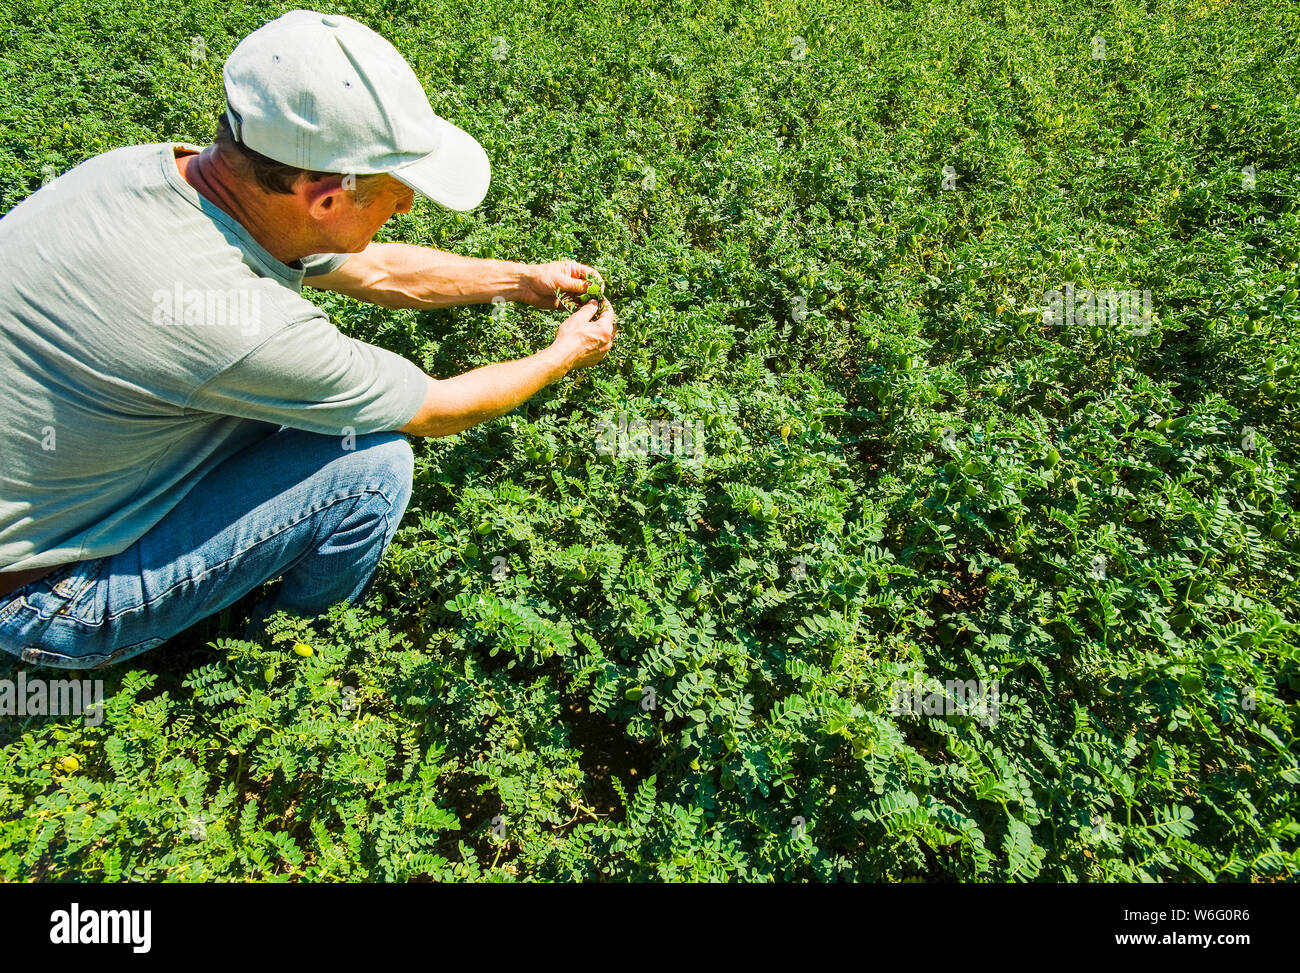 Farmer examining a mid-growth chickpea field, near Kincaid; Saskatchewan, Canada Stock Photo